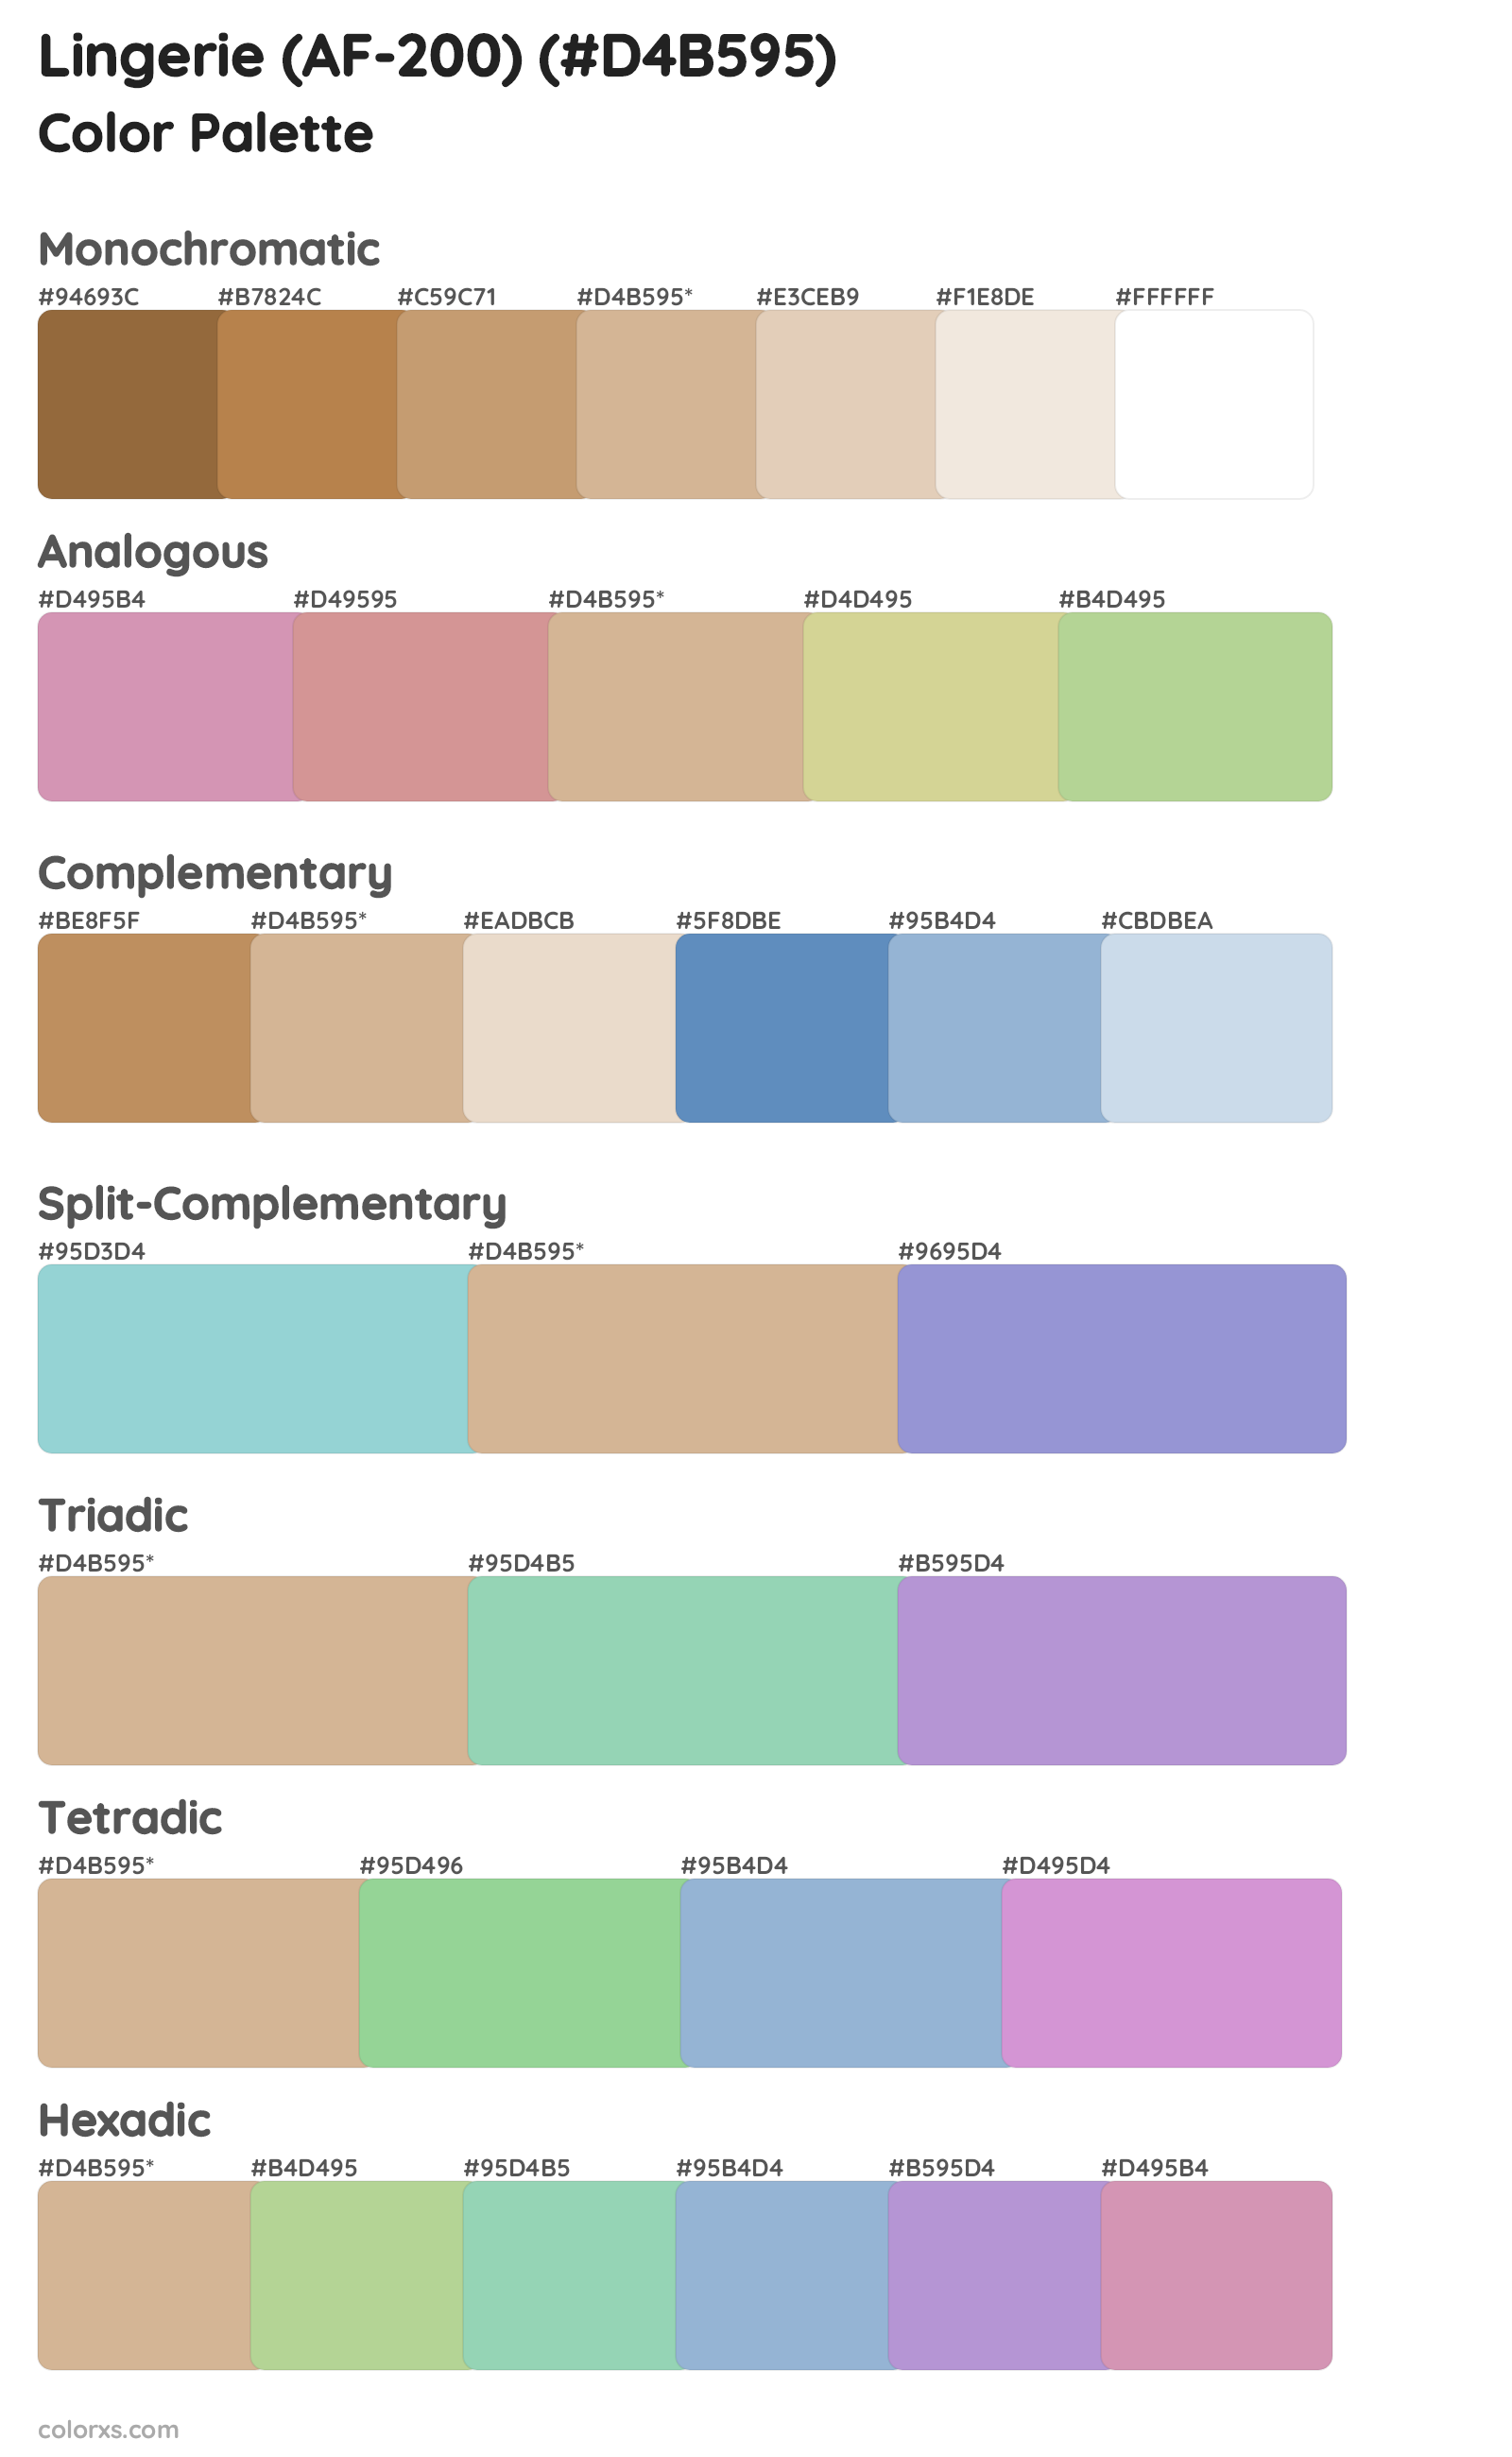 Lingerie (AF-200) Color Scheme Palettes